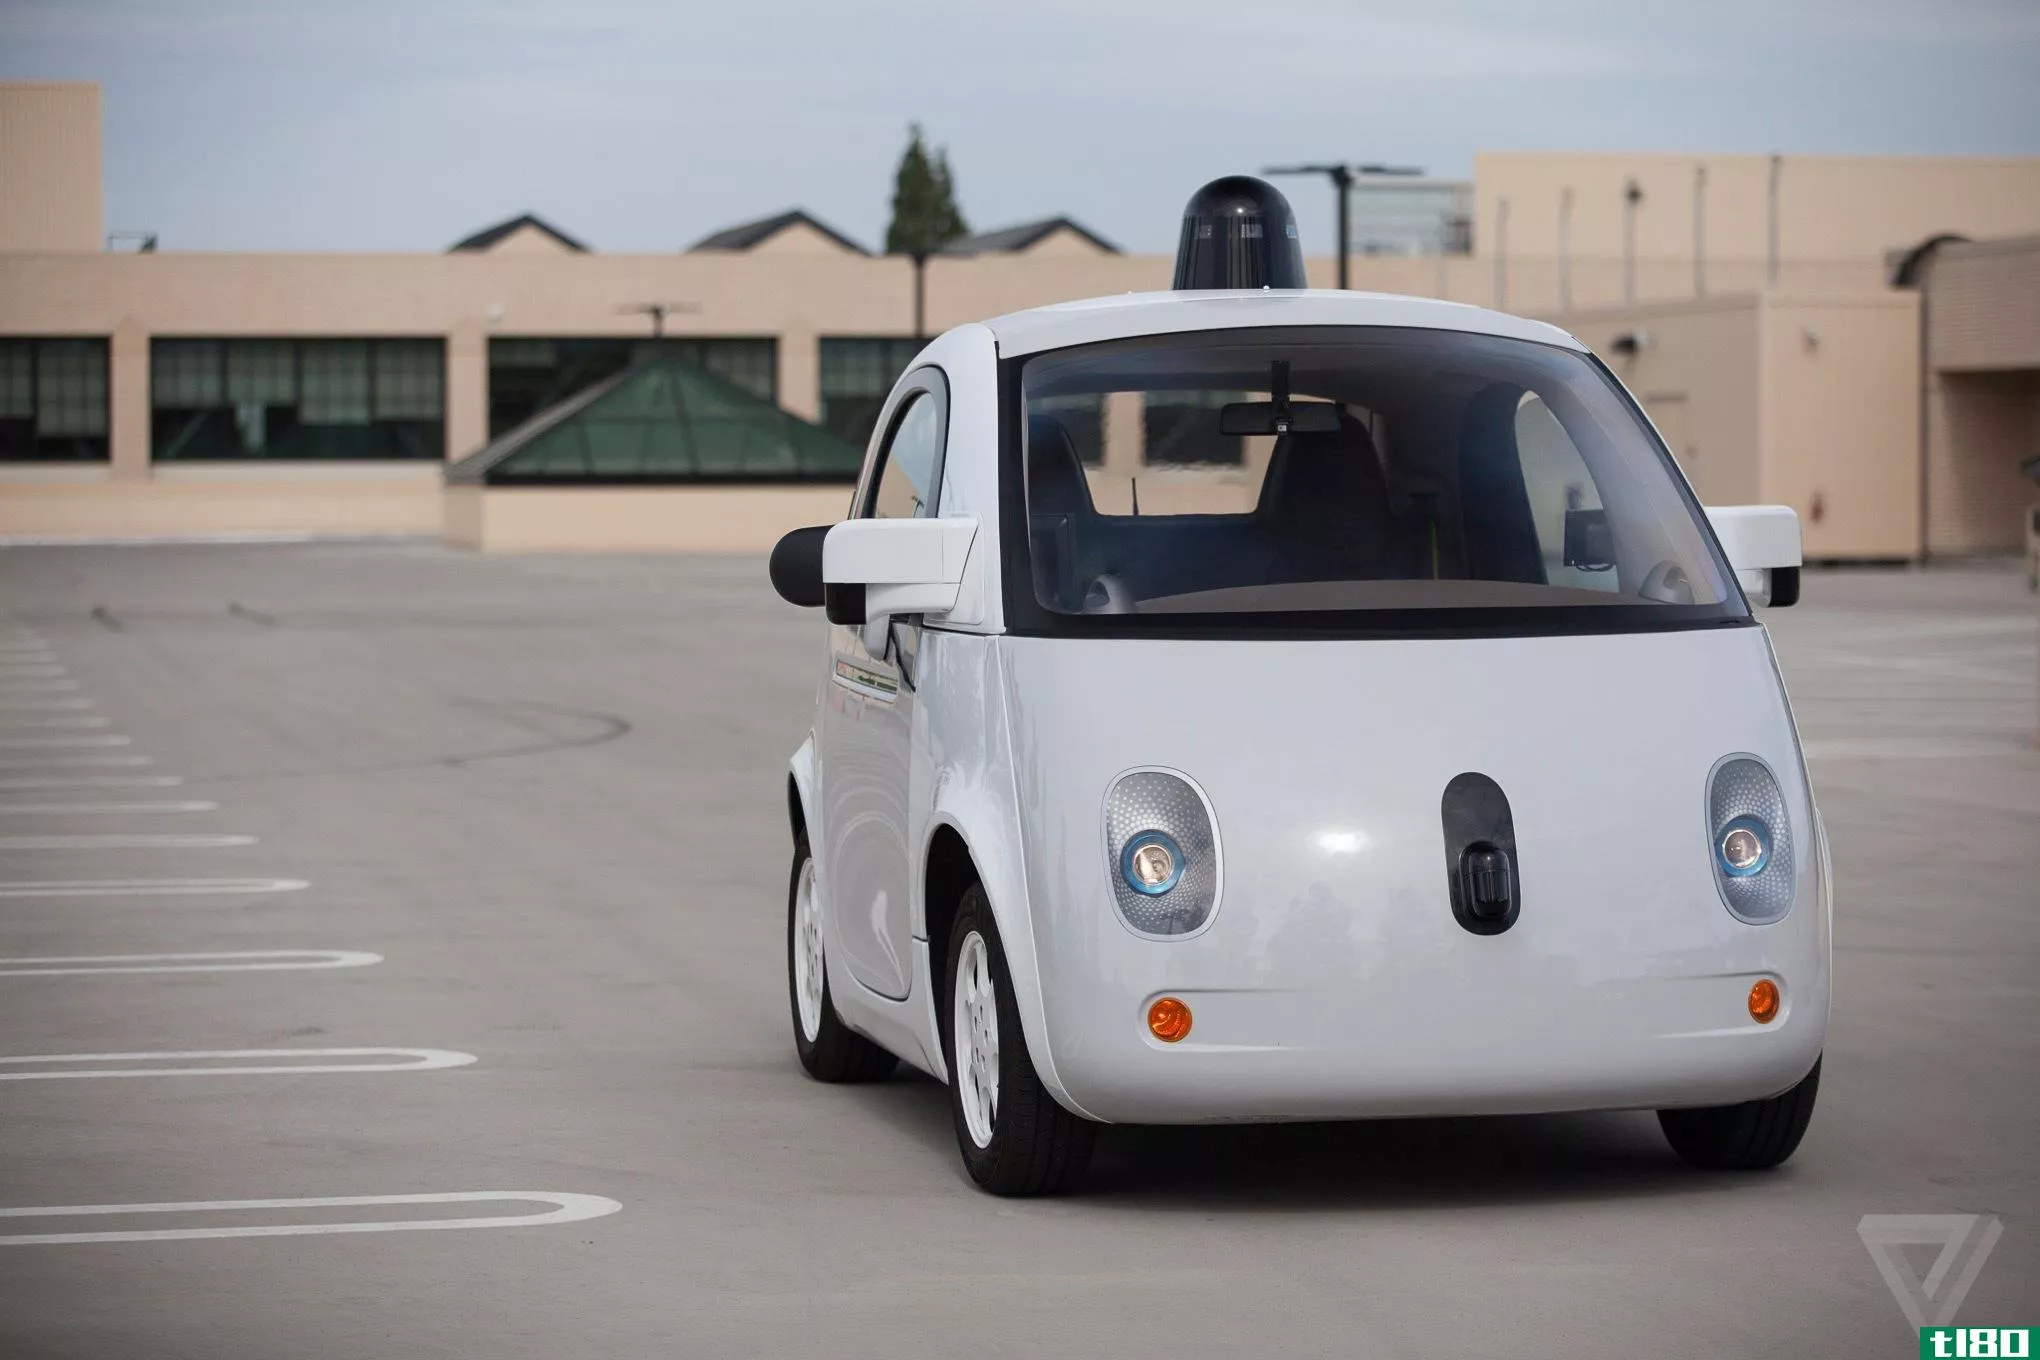 谷歌的巴士撞车事件正在改变人们对自动驾驶汽车的看法